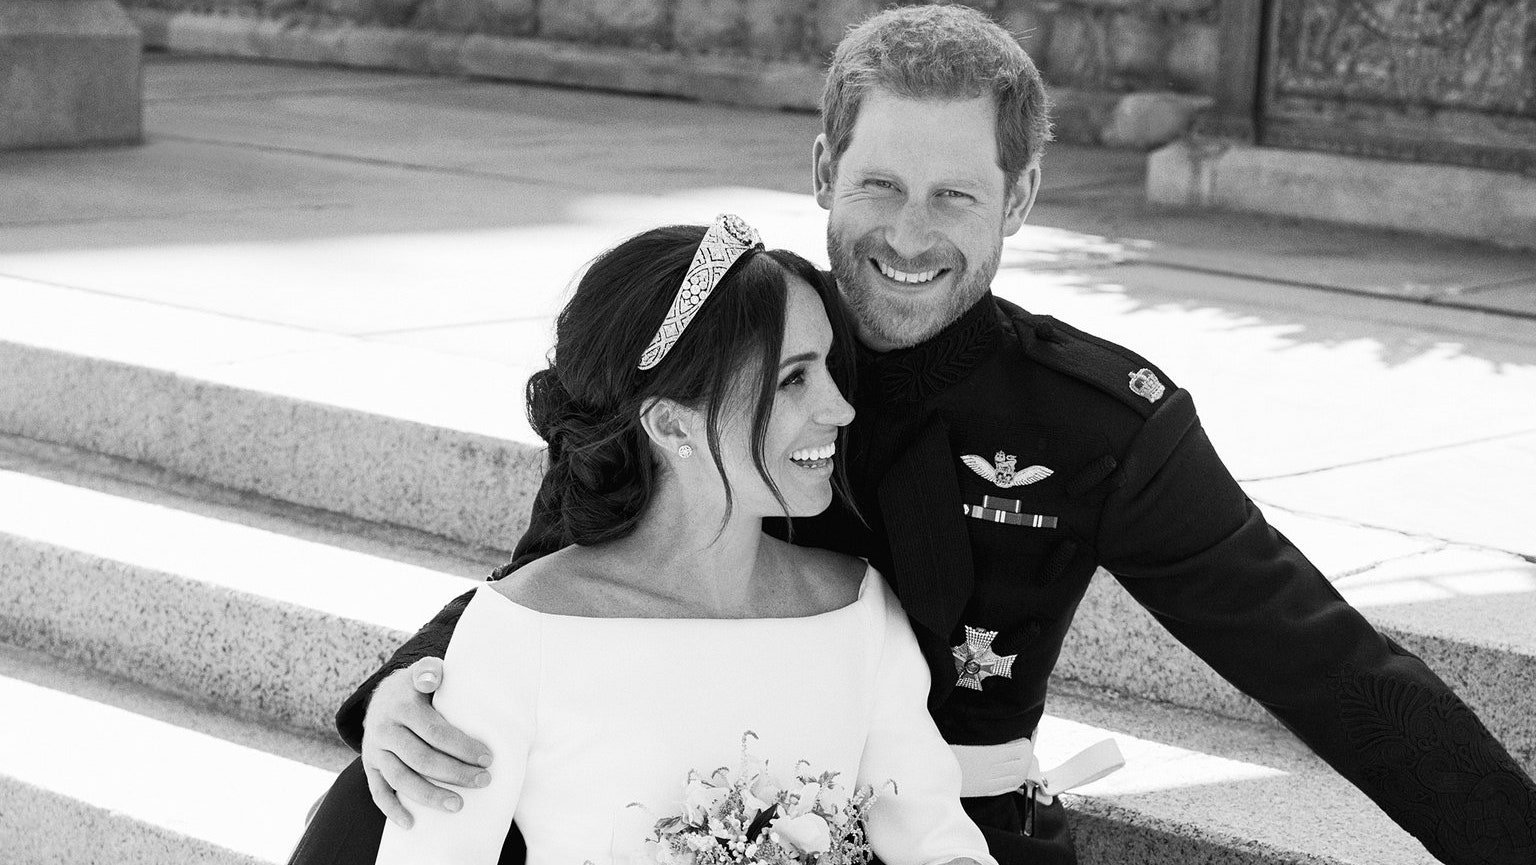 Официальные свадебные фото принца Гарри и Меган Маркл